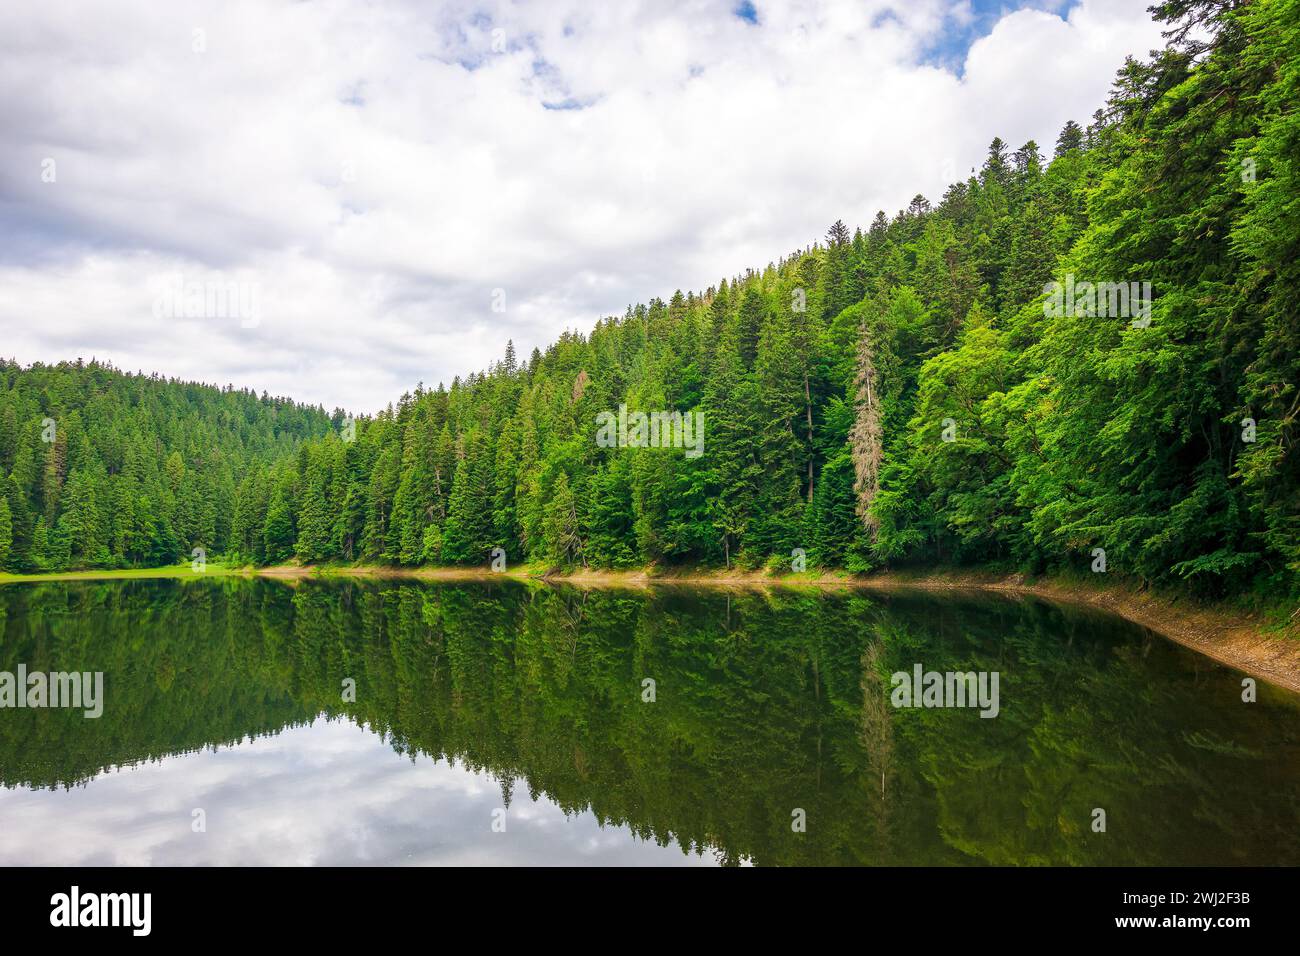 parco nazionale del lago synevyr in estate. colline boscose dei carpazi che si riflettono sulla superficie dell'acqua. tempo nuvoloso. destinazione turistica popolare Foto Stock